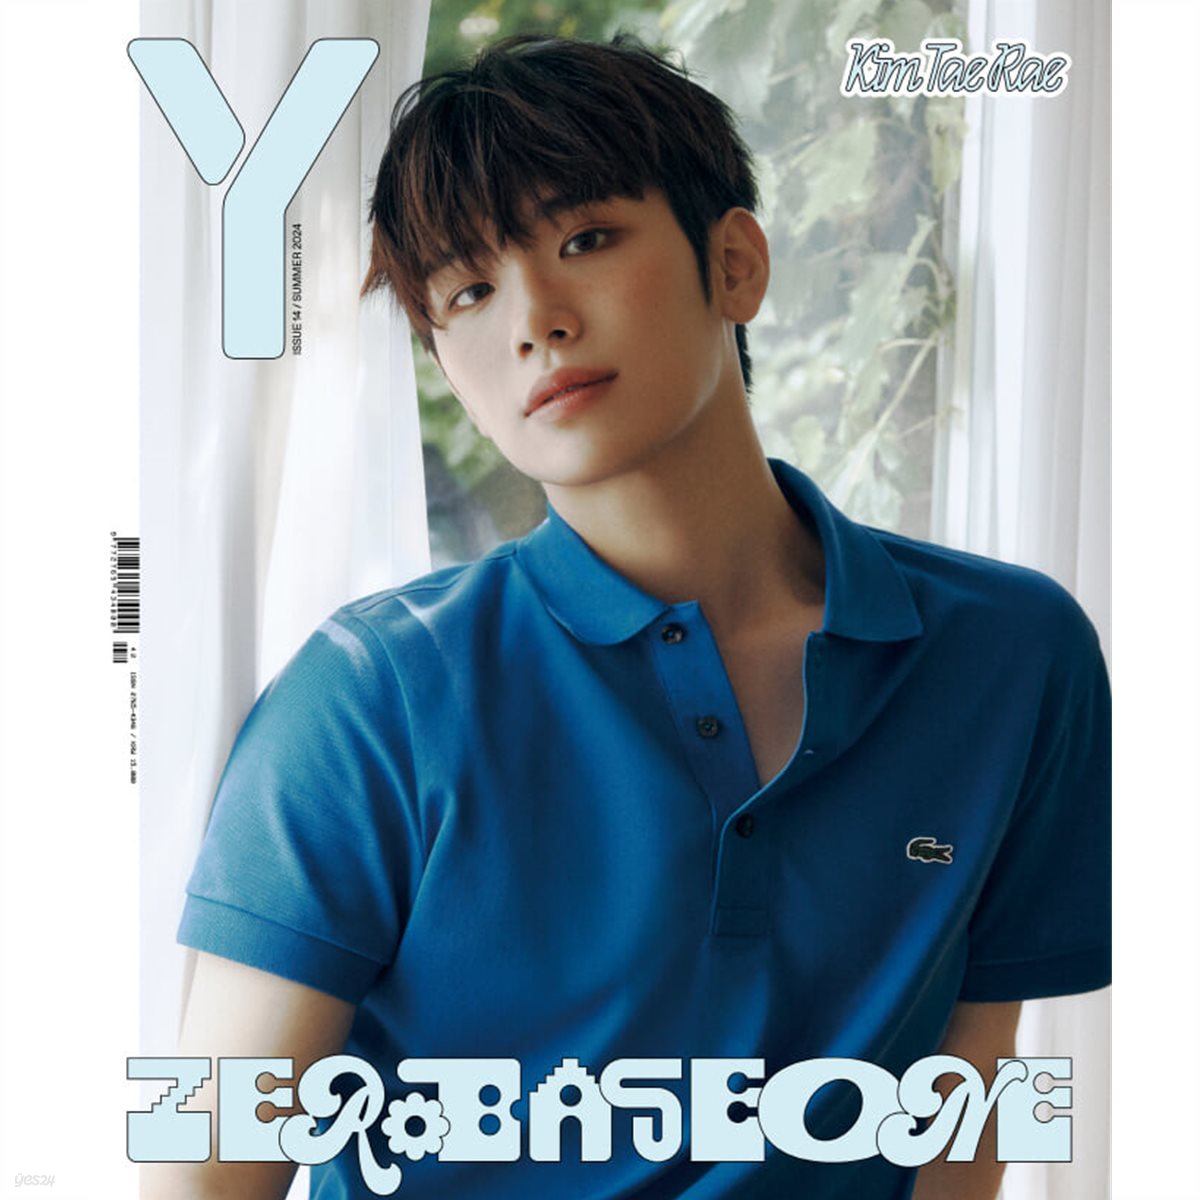 (PRE-ORDER) Y Magazine - Vol.14 (Hao - Yujin - Taerae)